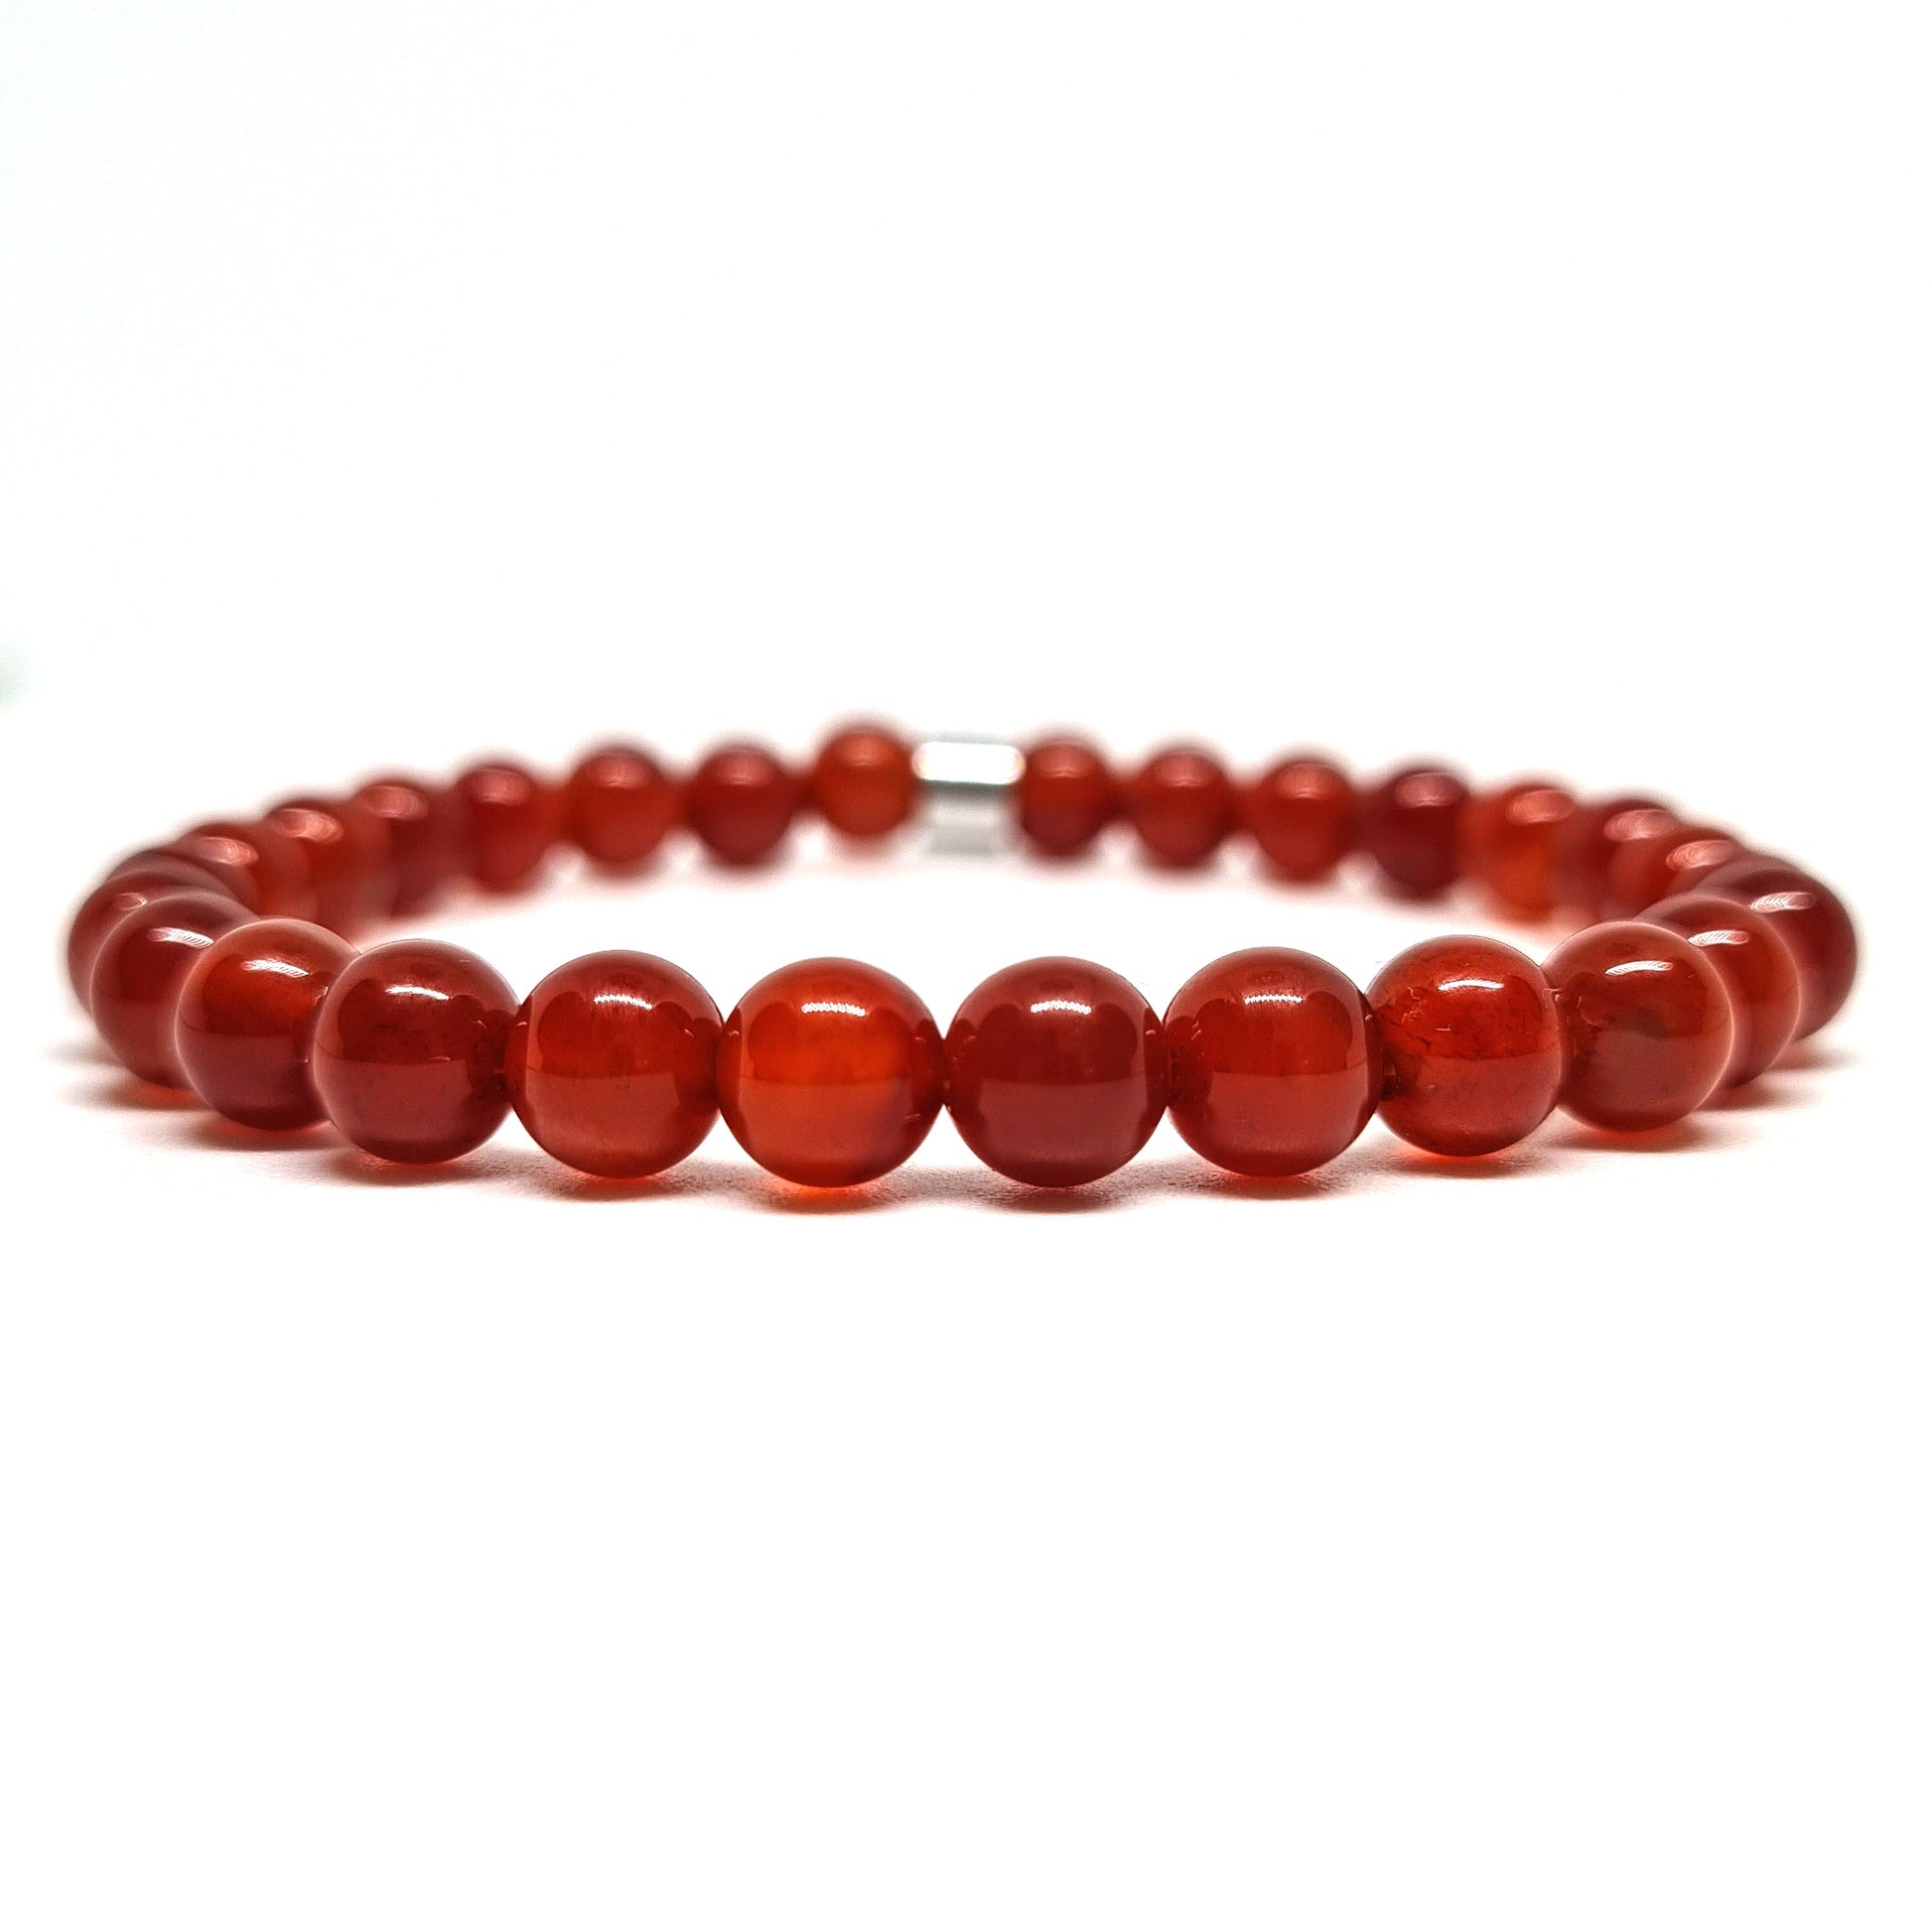 Red Carnelian gemstone bracelet with steel accessory